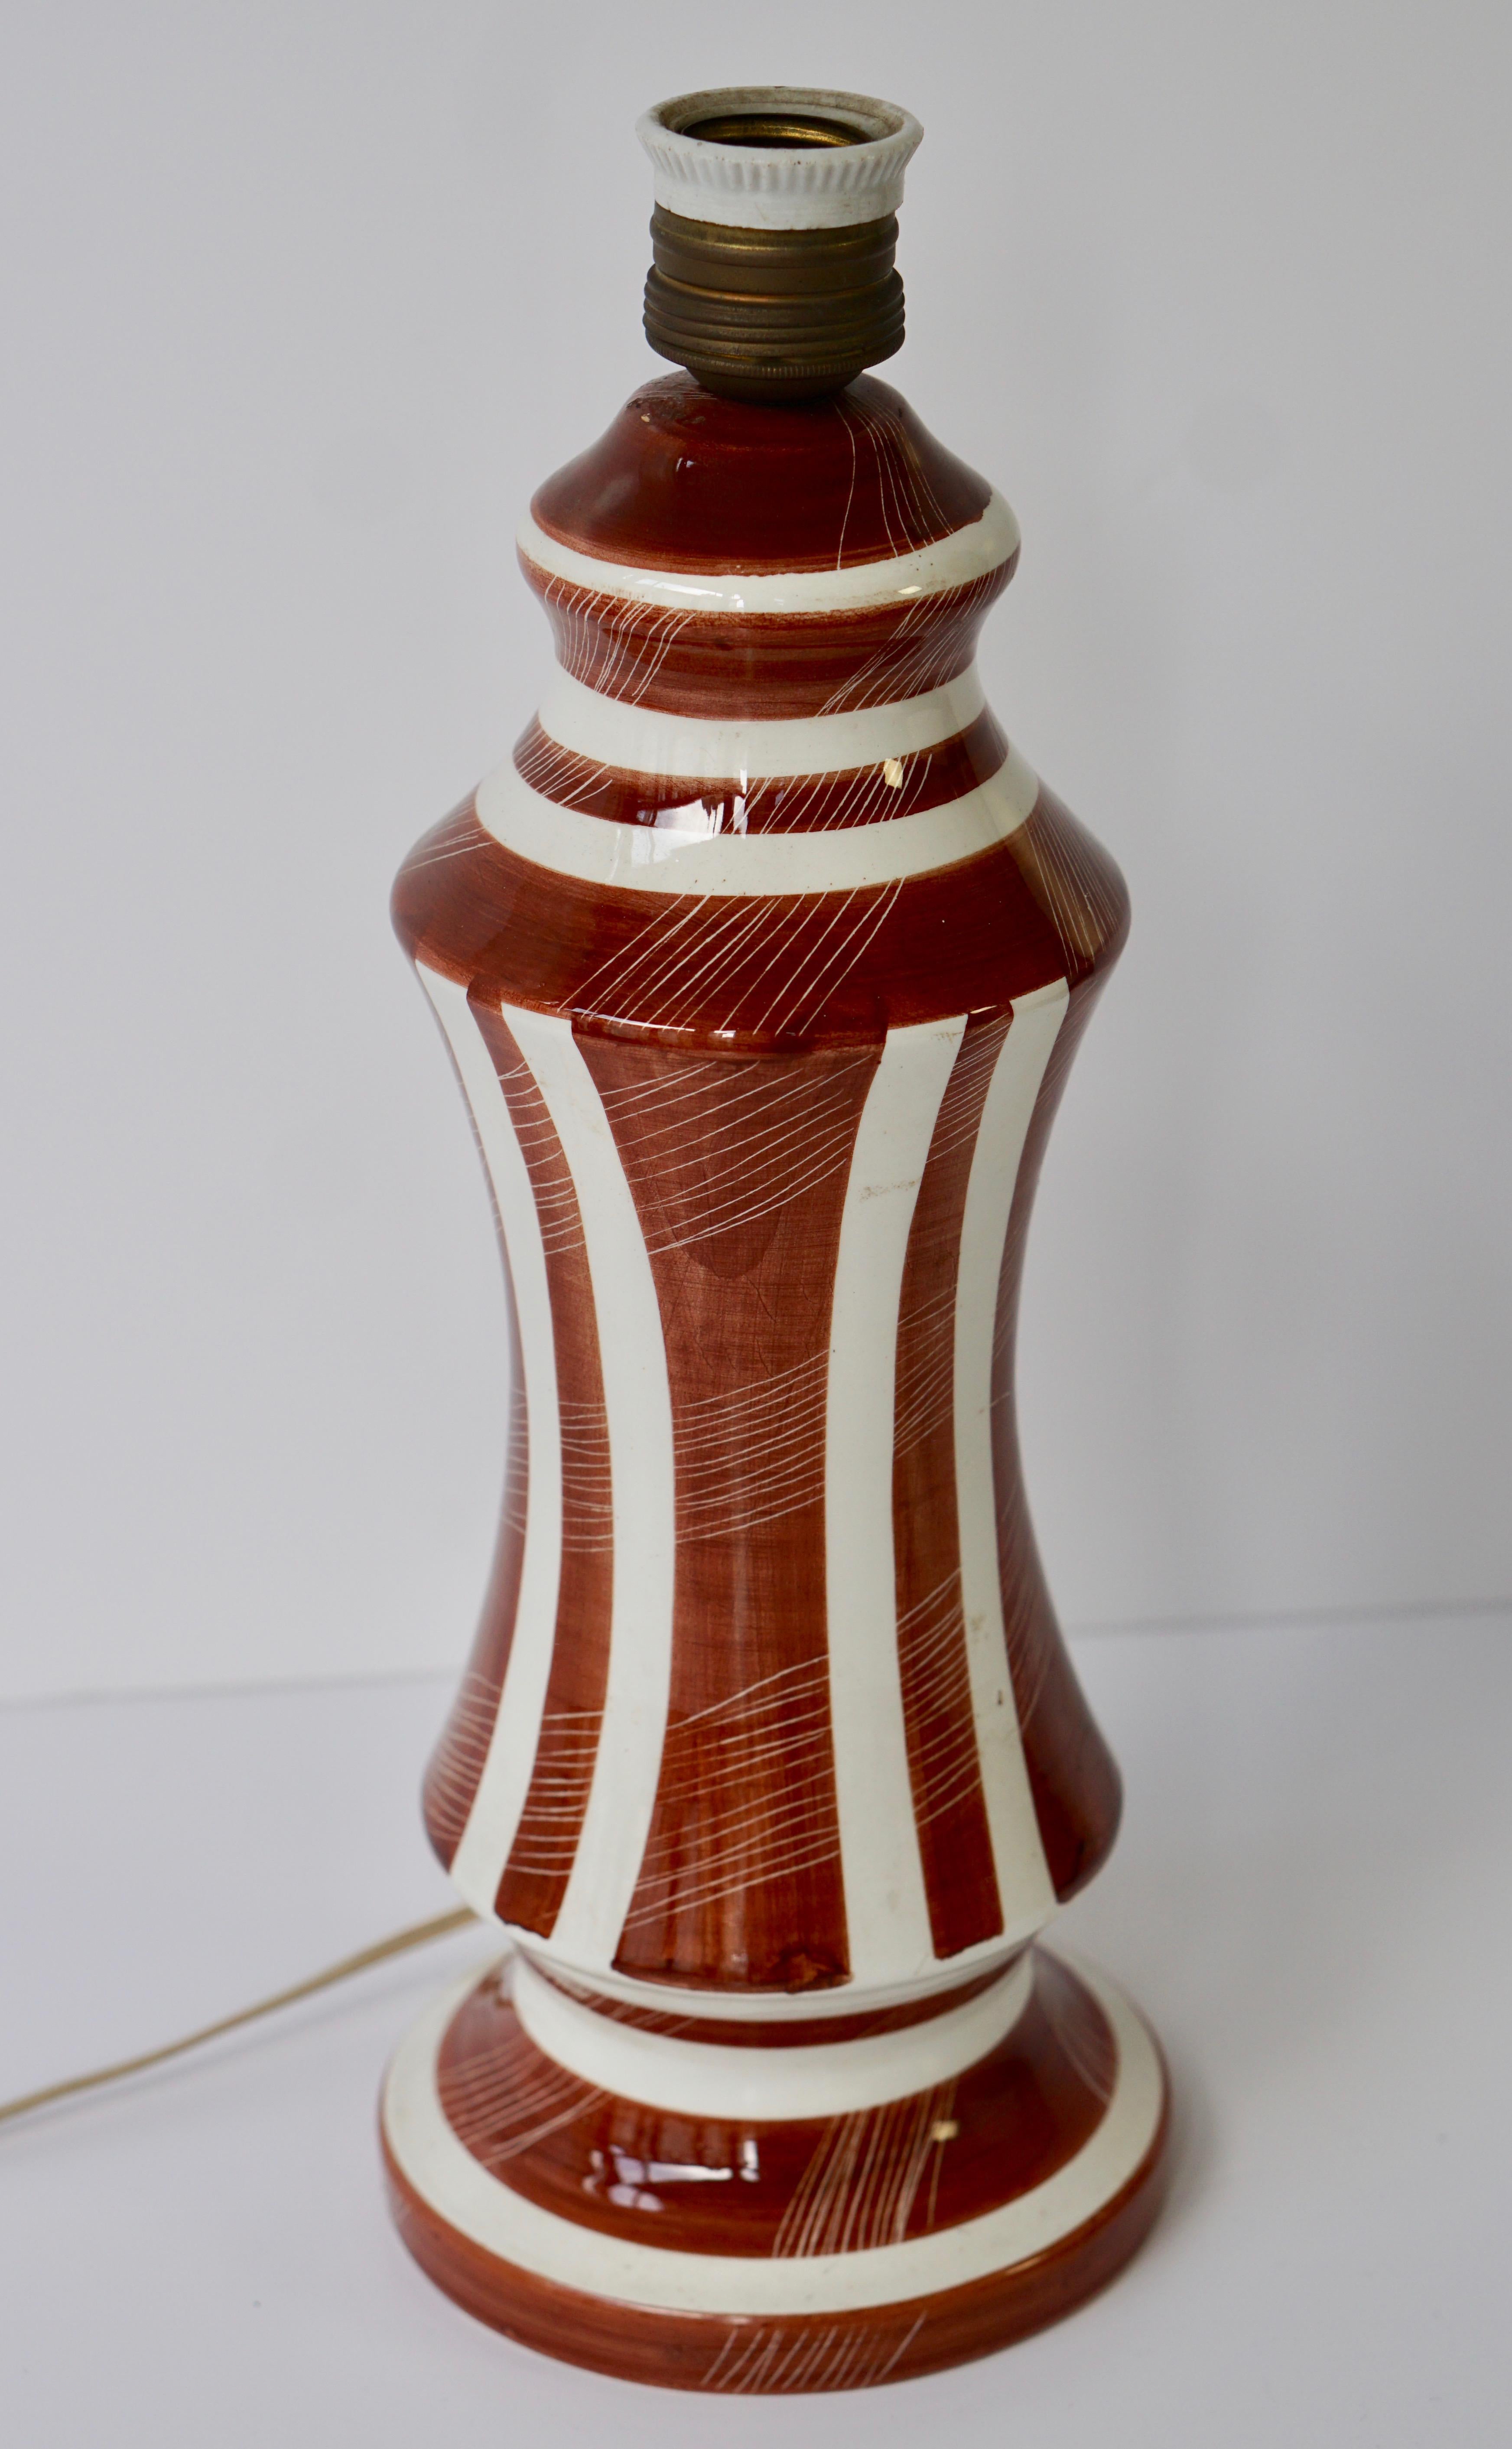 Italian Ceramic Table Lamp by Mancioli, Italy